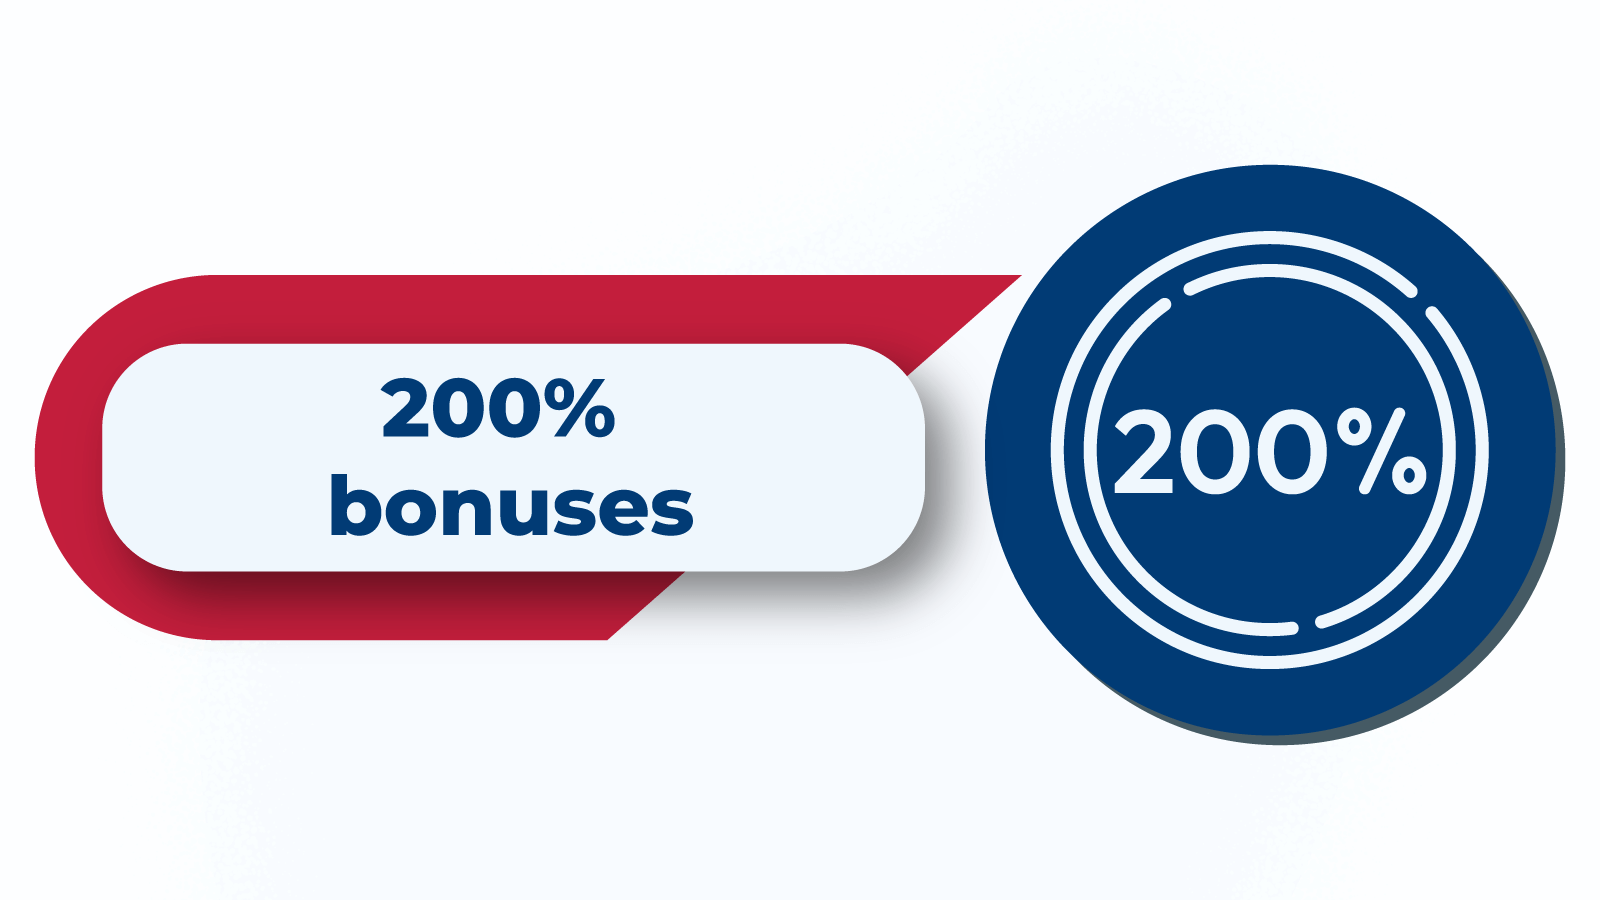 200% bonuses